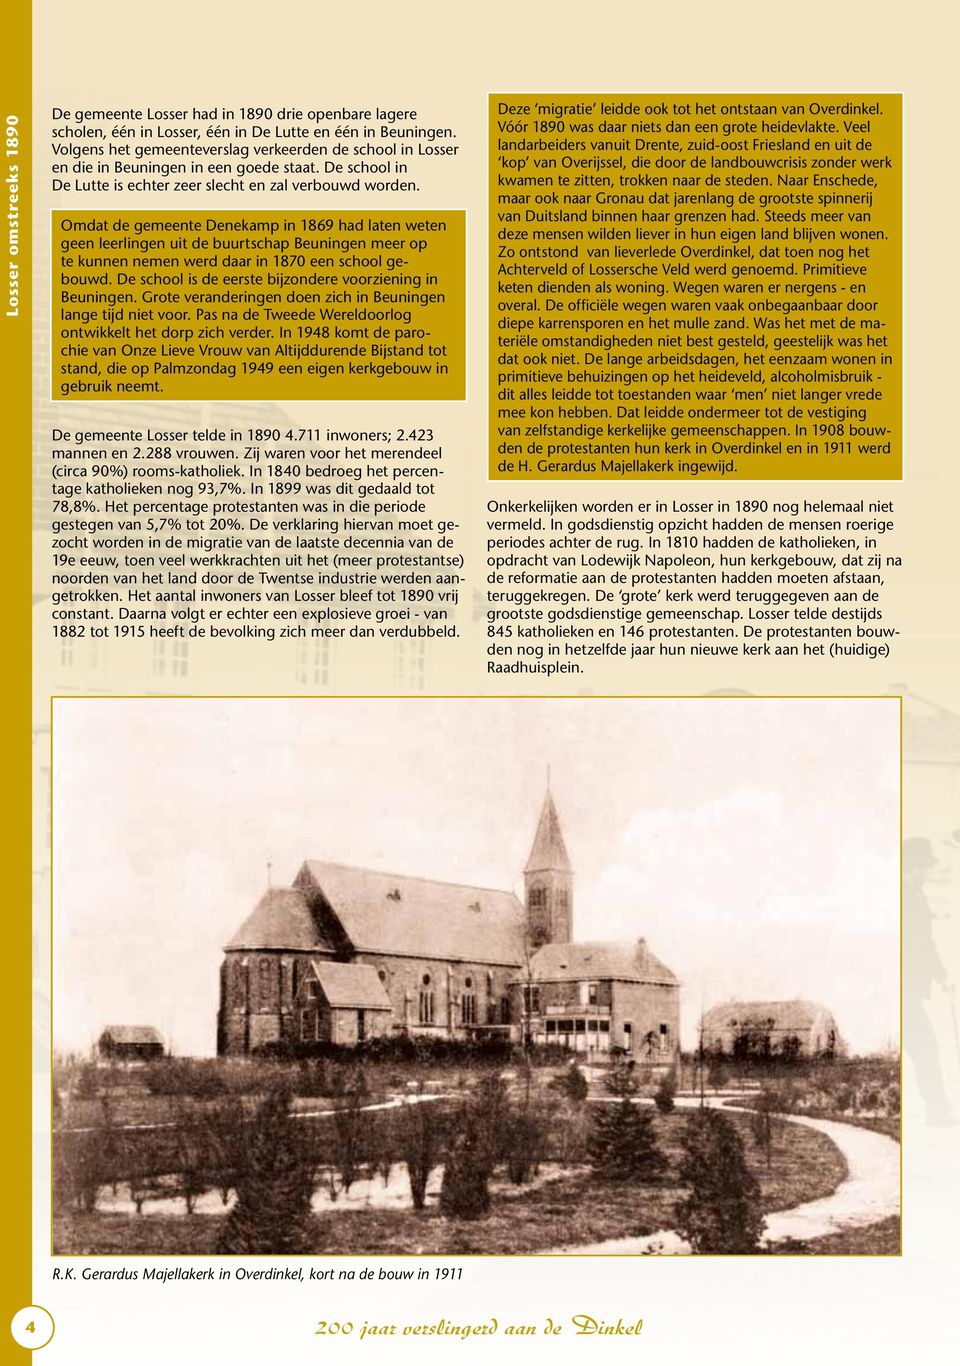 Omdat de gemeente Denekamp in 1869 had laten weten geen leerlingen uit de buurtschap Beuningen meer op te kunnen nemen werd daar in 1870 een school gebouwd.